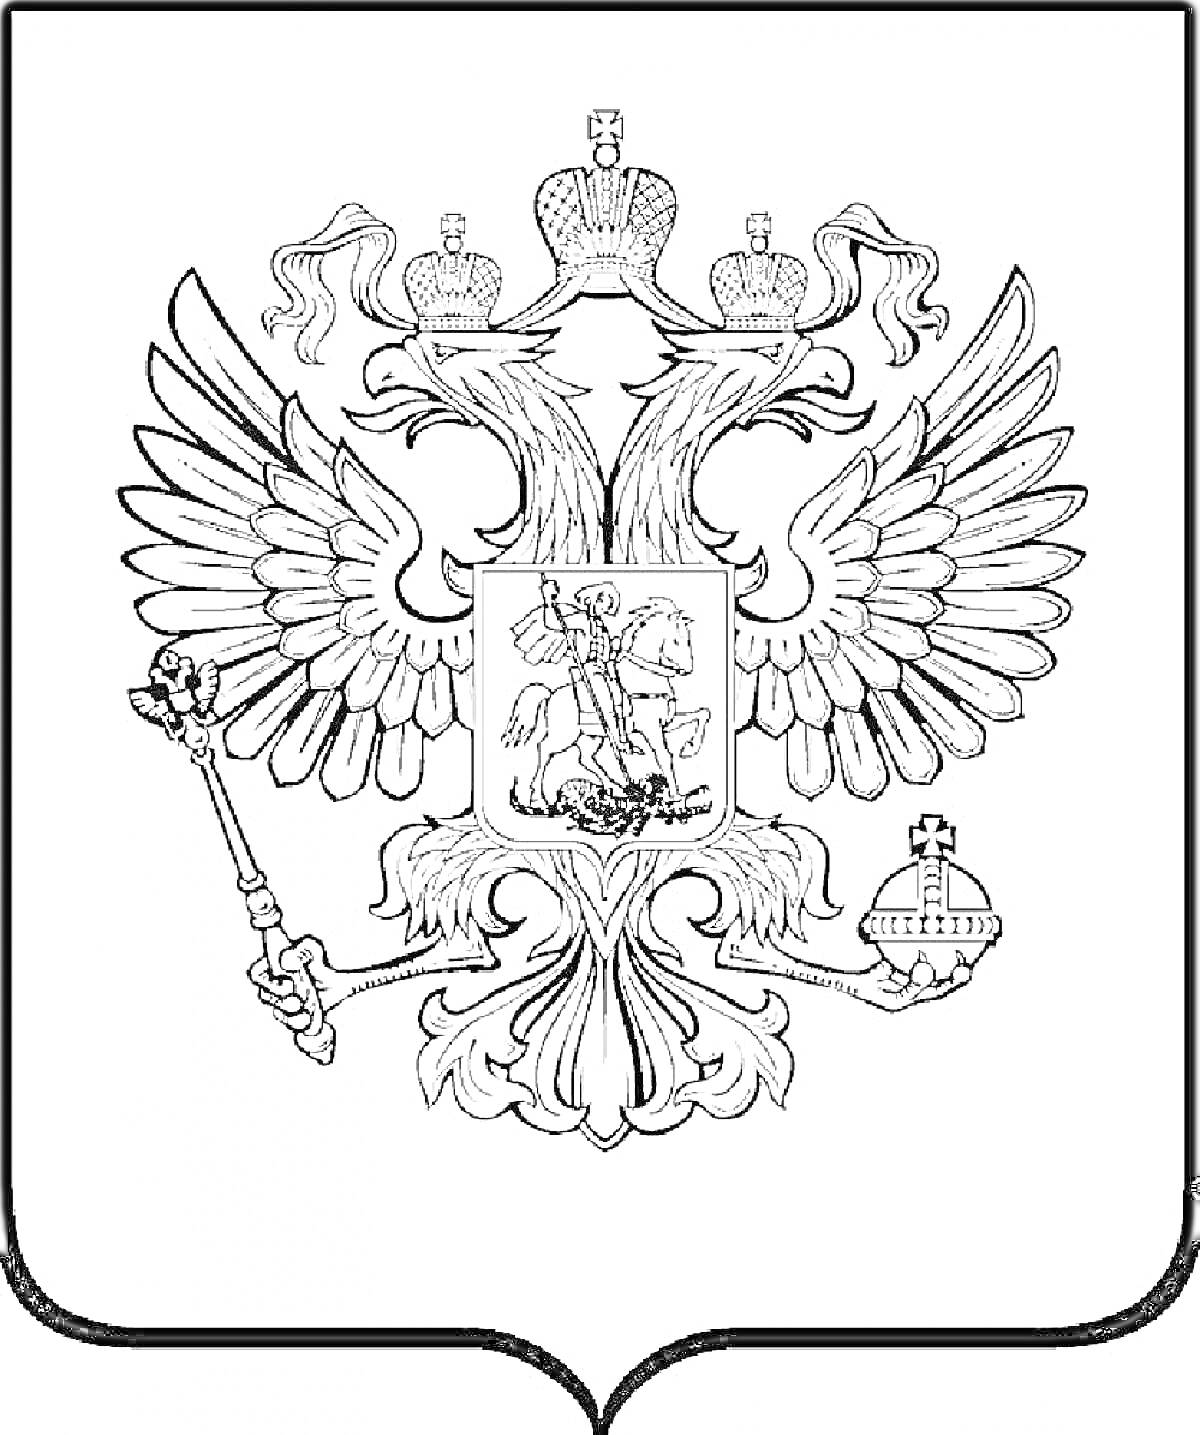 Герб России с двуглавым орлом, державой, скипетром и щитом с изображением Святого Георгия Победоносца, убивающего дракона